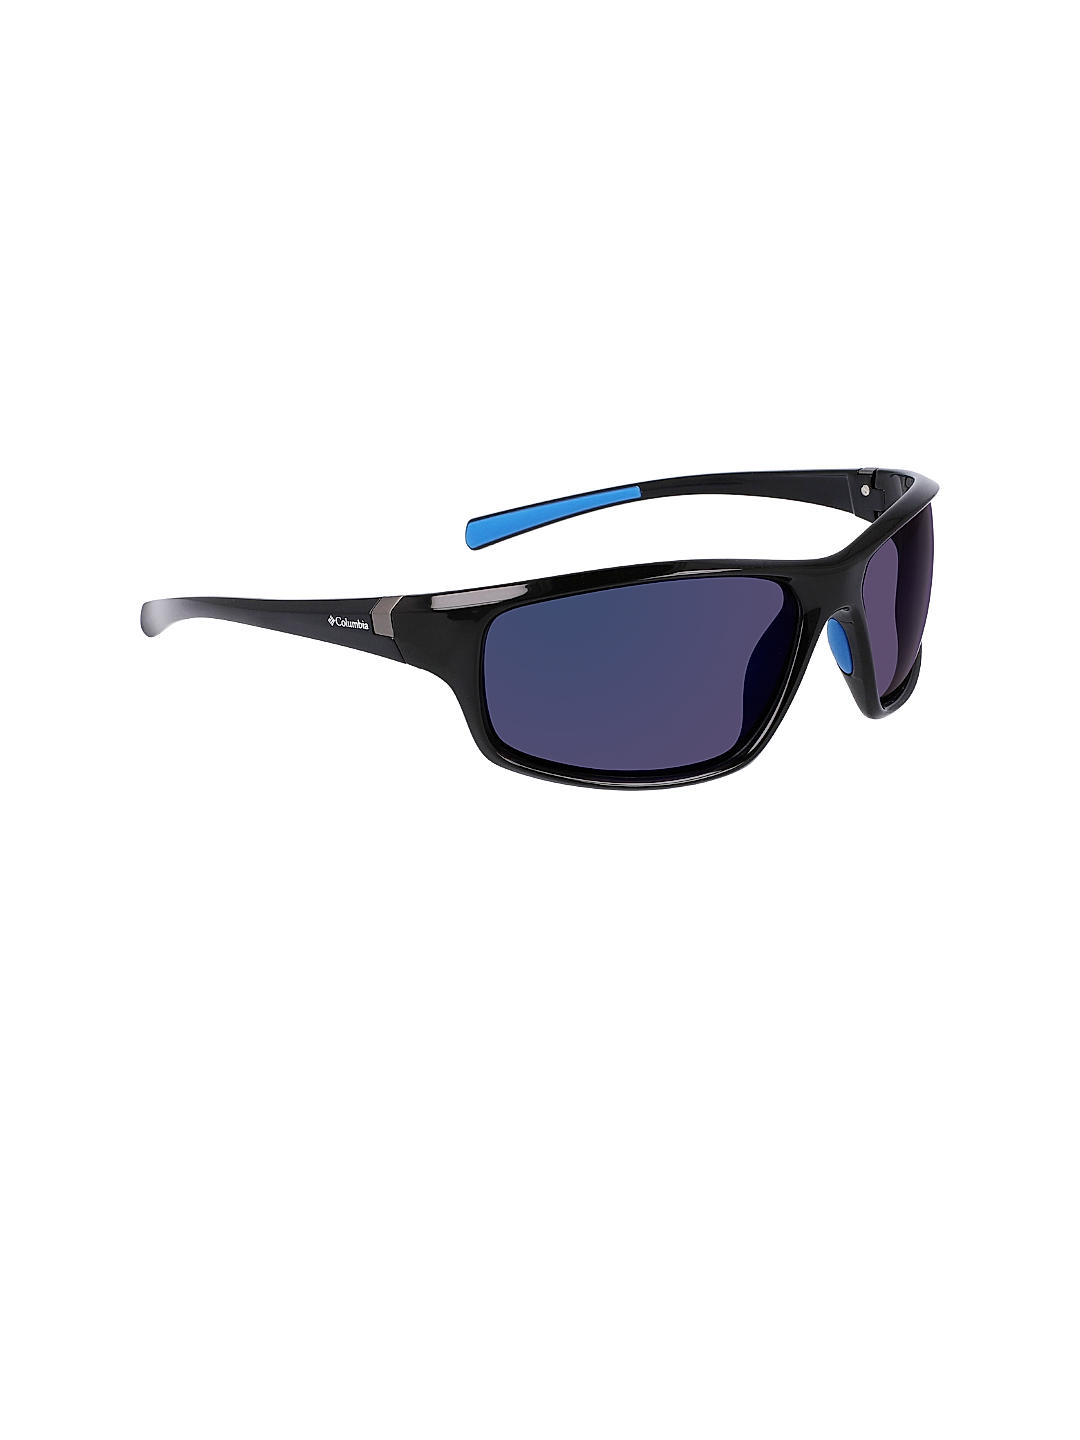 Buy Black Slick Creek Sunglasses for Men Online at Columbia